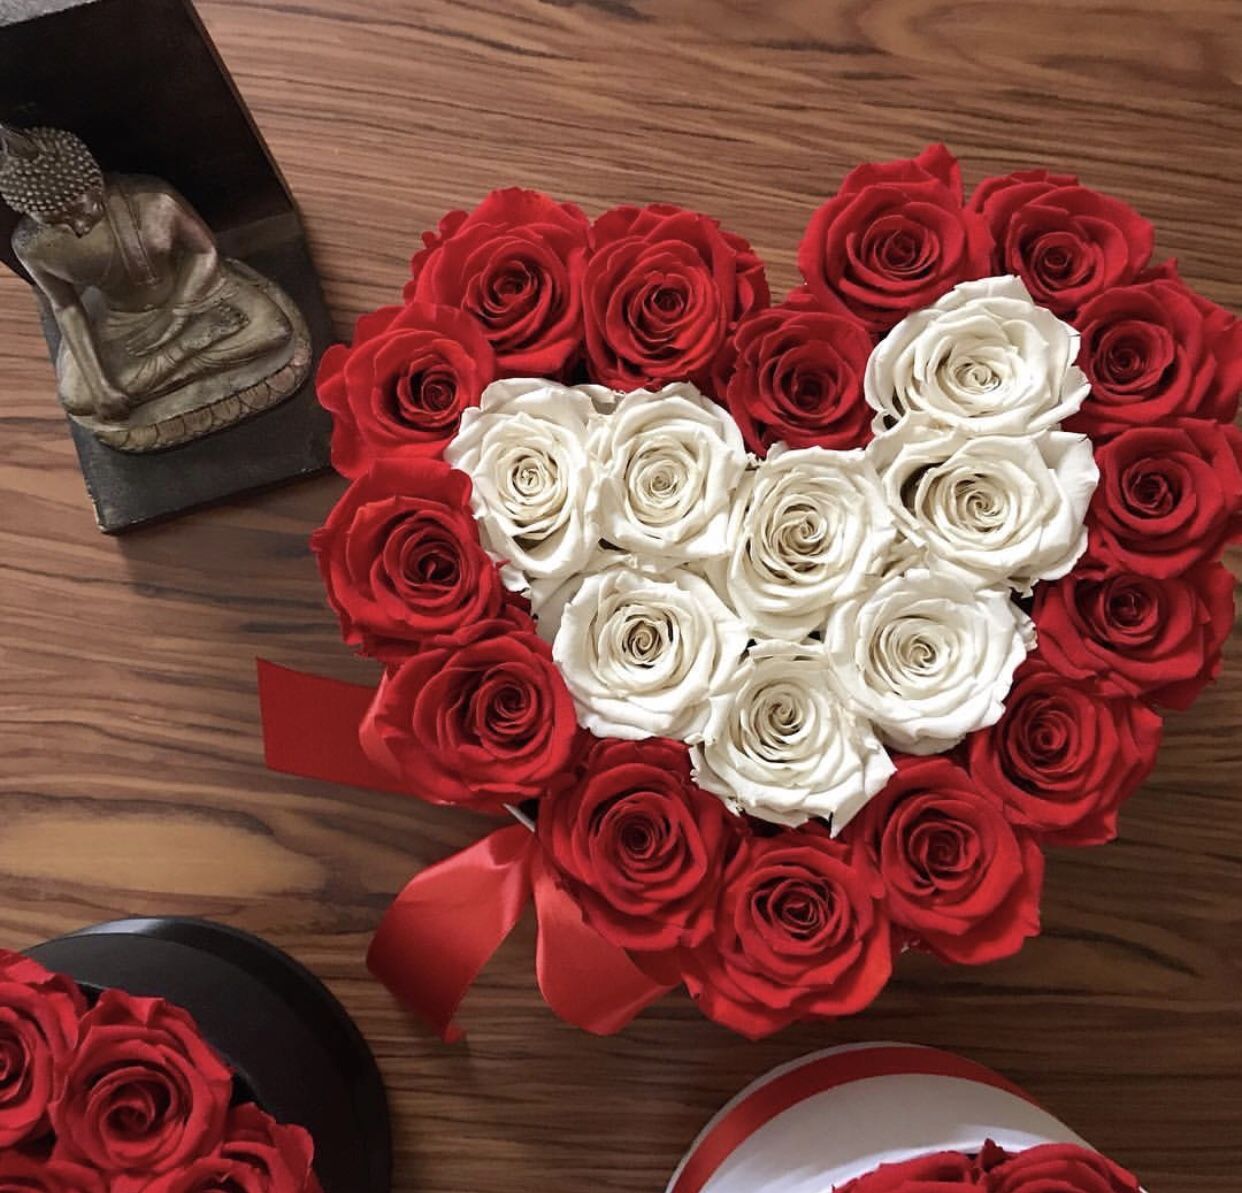 Красиво разместить 15 роз в коробочке-сердце